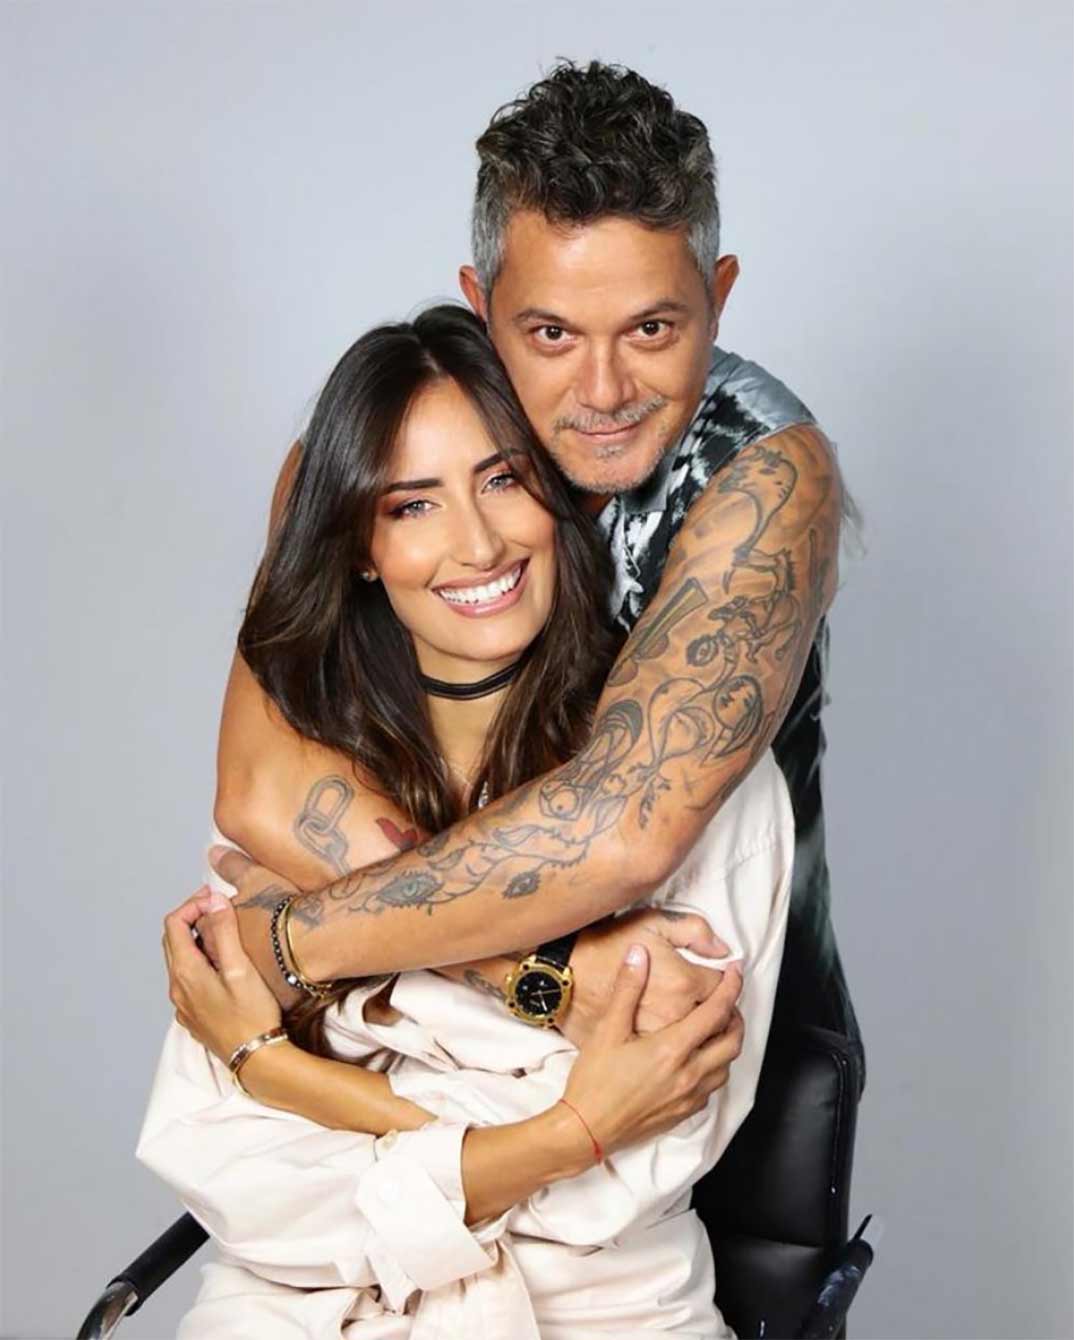 Alejandro Sanz y Rachel Valdés © Instagram